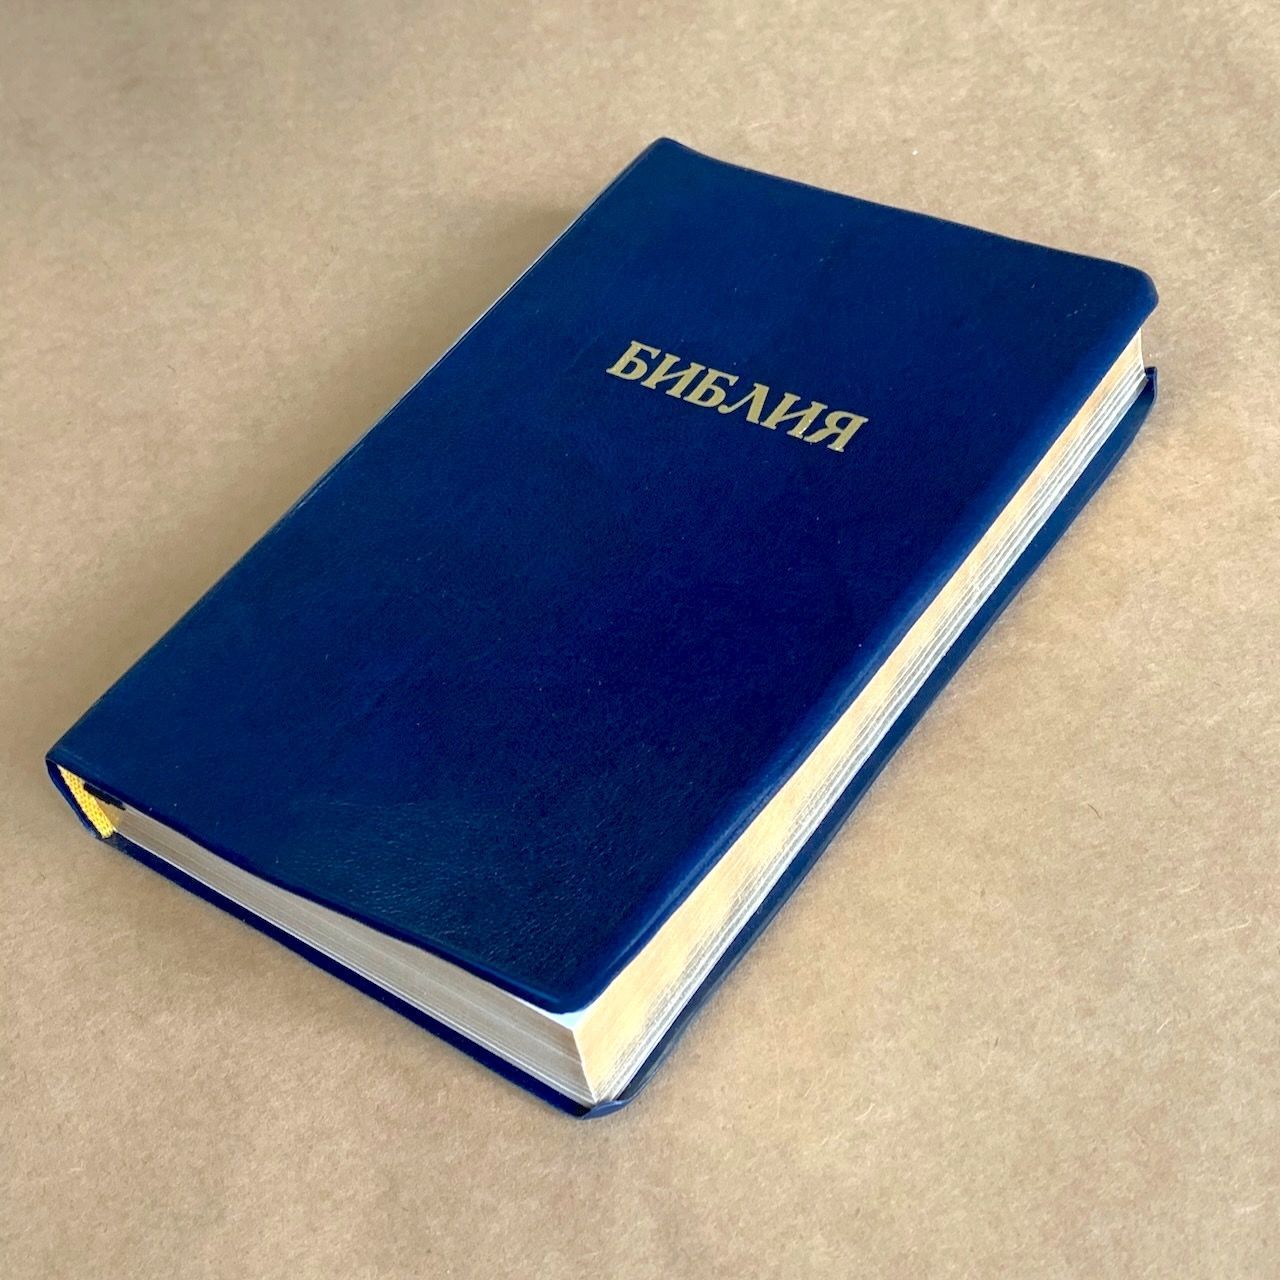 Библия 048 код E9 надпись "библия", переплет искусственной кожи, цвет темно-синий, формат 125*190 мм, золотой обрез, синодальный перевод, паралельные места по центру страницы, 2 закладки, шрифт 10-11 кегель, цветные карты